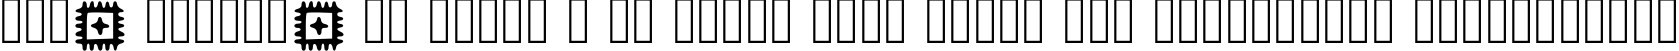 Пример написания шрифтом Glypha Regular текста на украинском